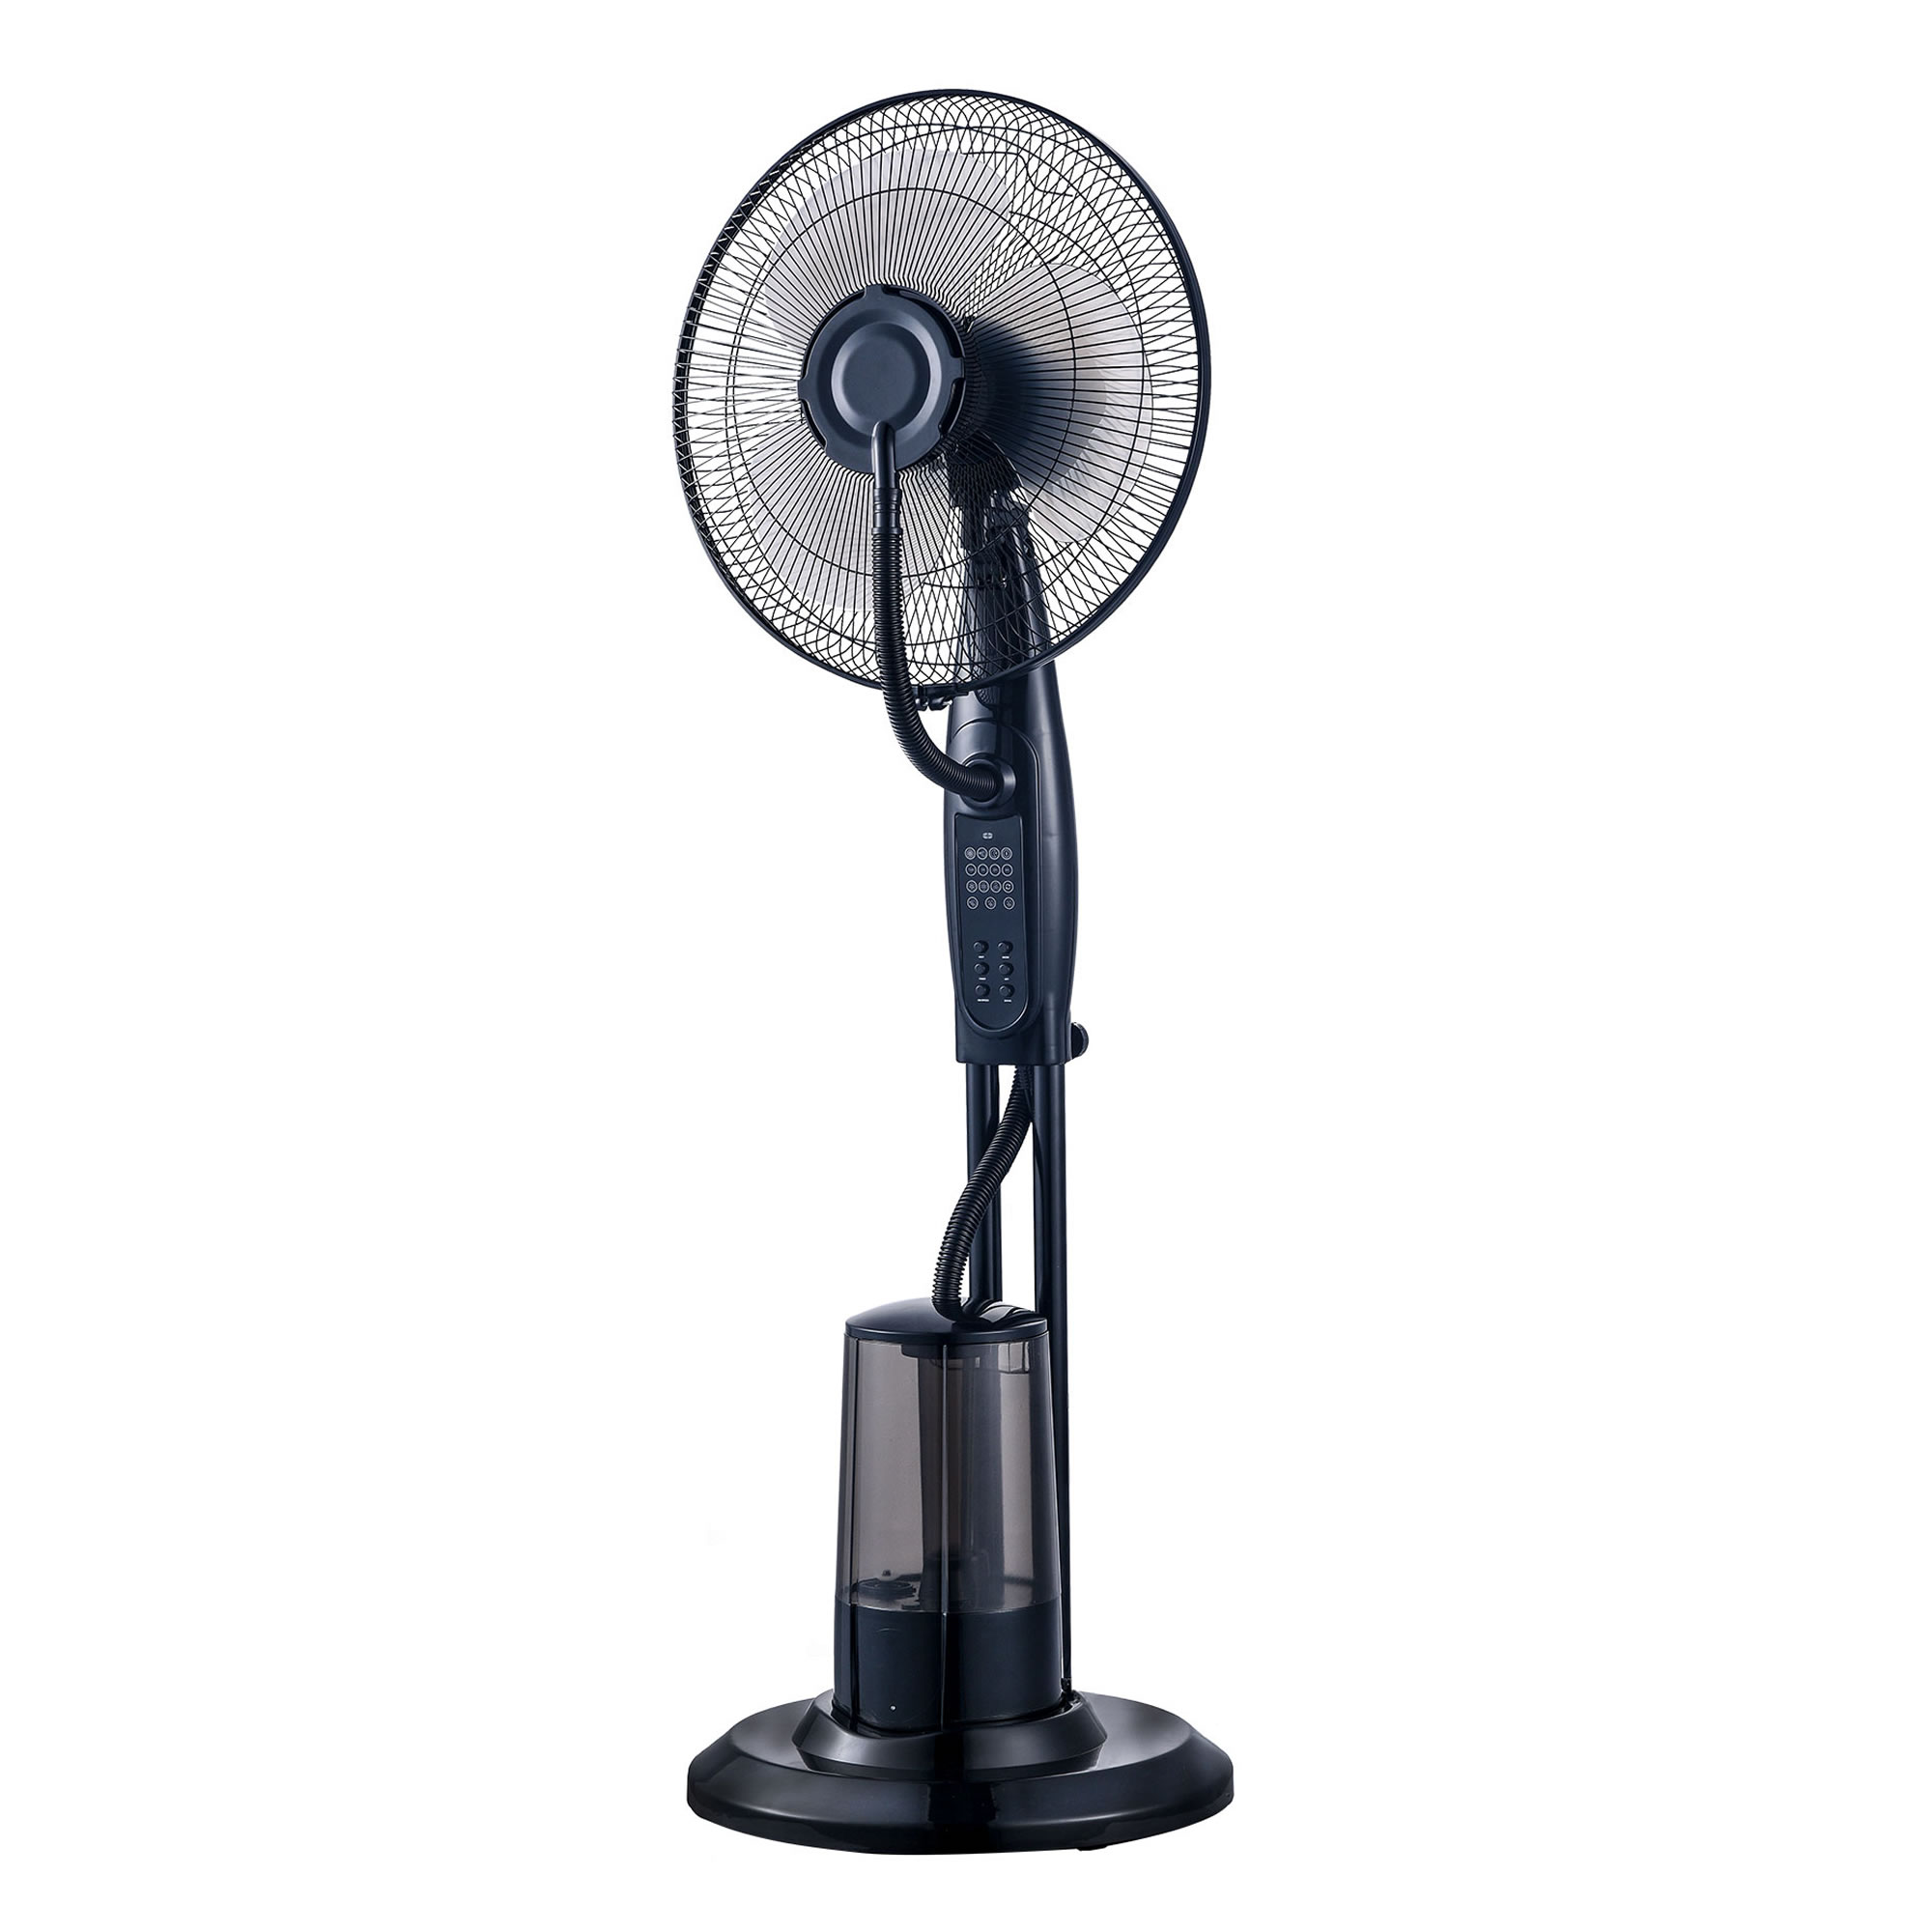 Ventilator Elit FMS-4012 Mist Fan